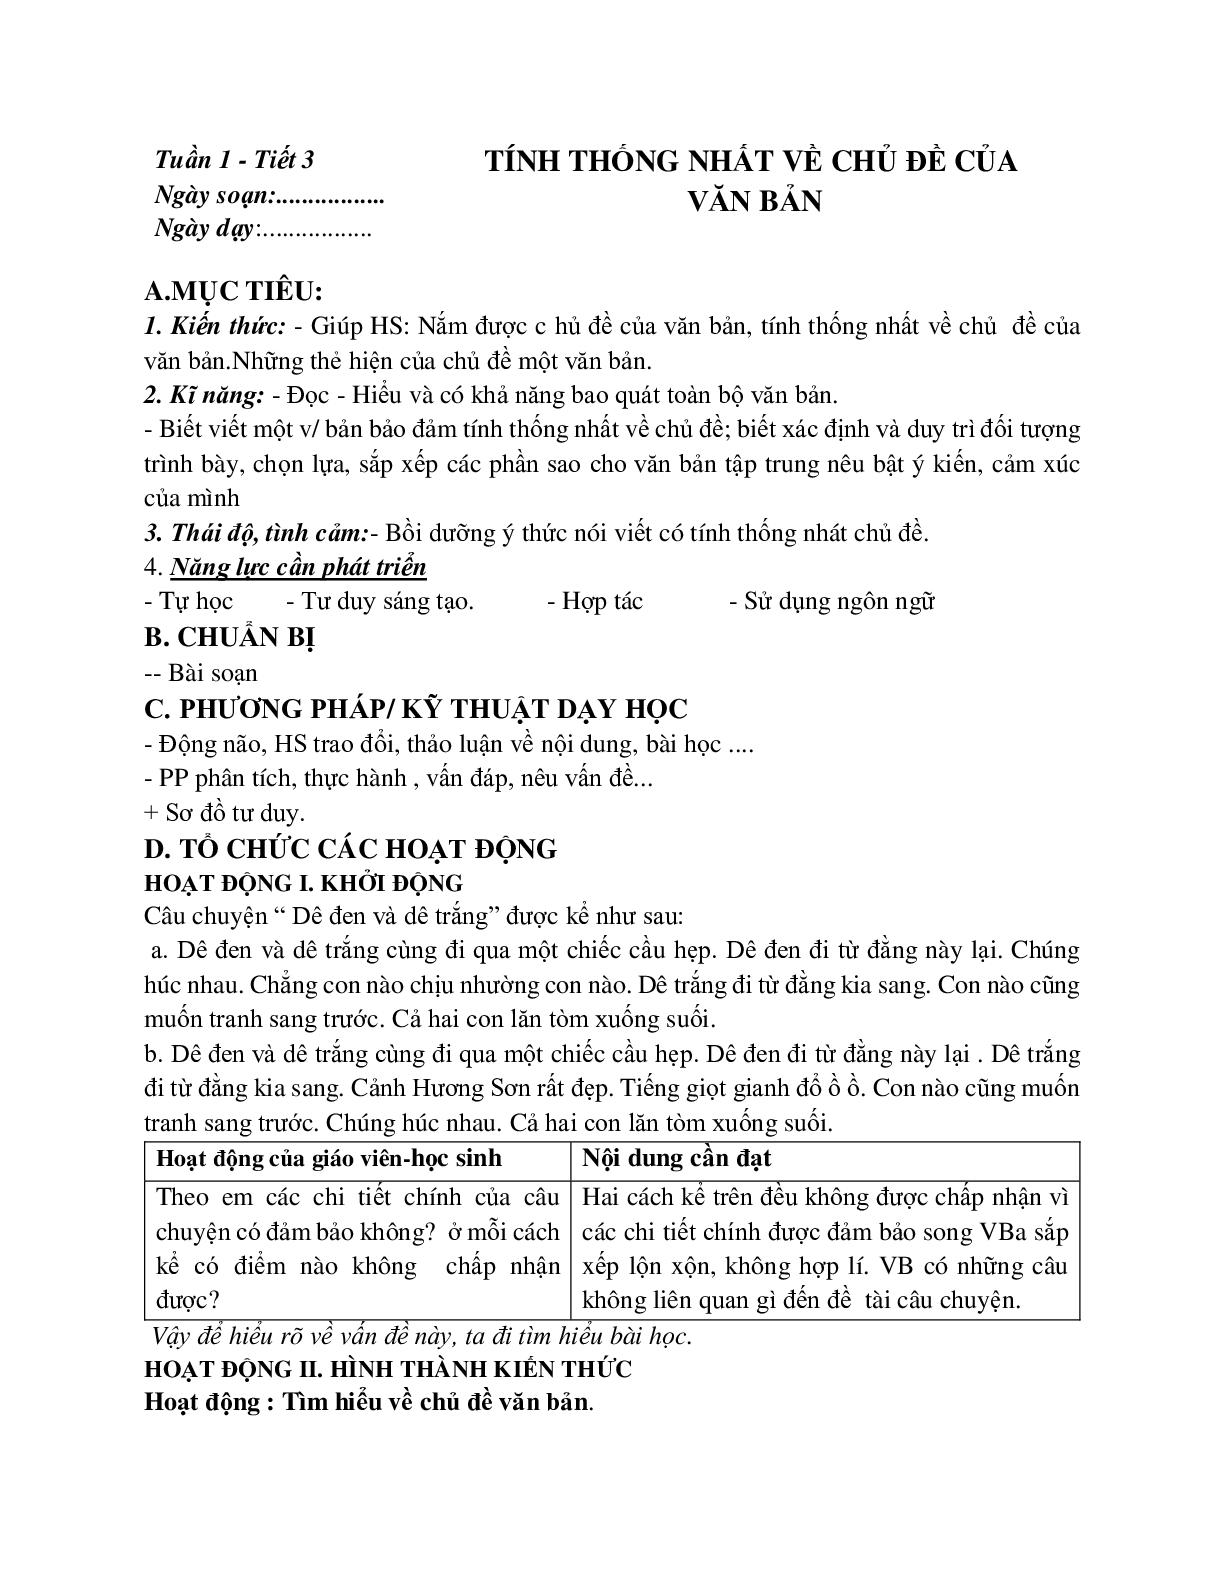 Giáo án ngữ văn lớp 8 Tuần 1 Tiết 3: Tính thống nhất về chủ đề của văn bản mới nhất (trang 1)